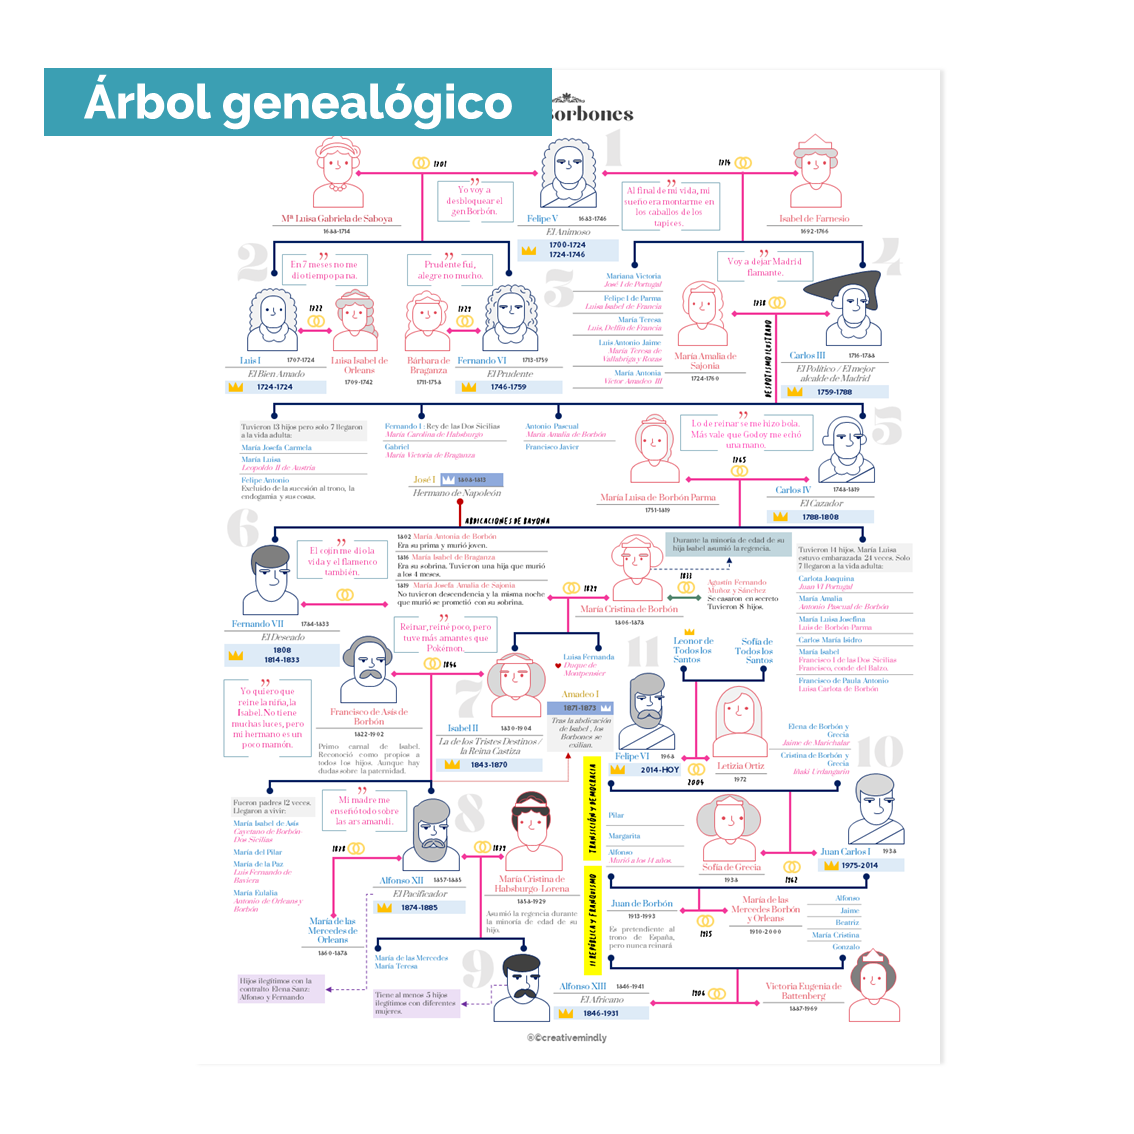 arbol genealogico borbones